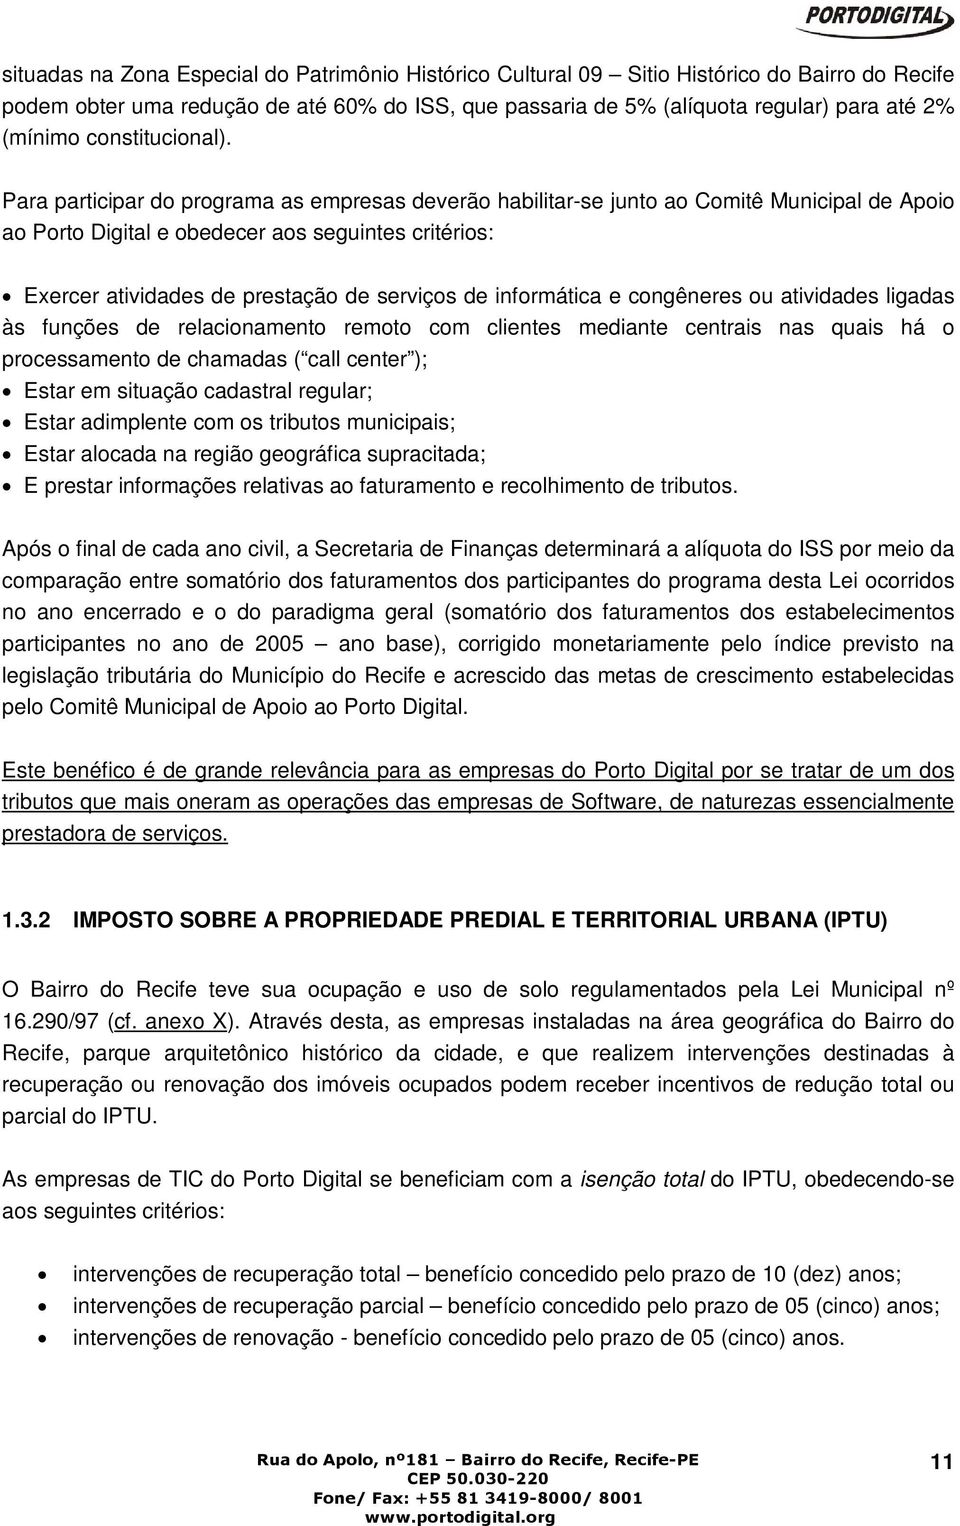 Para participar do programa as empresas deverão habilitar-se junto ao Comitê Municipal de Apoio ao Porto Digital e obedecer aos seguintes critérios: Exercer atividades de prestação de serviços de